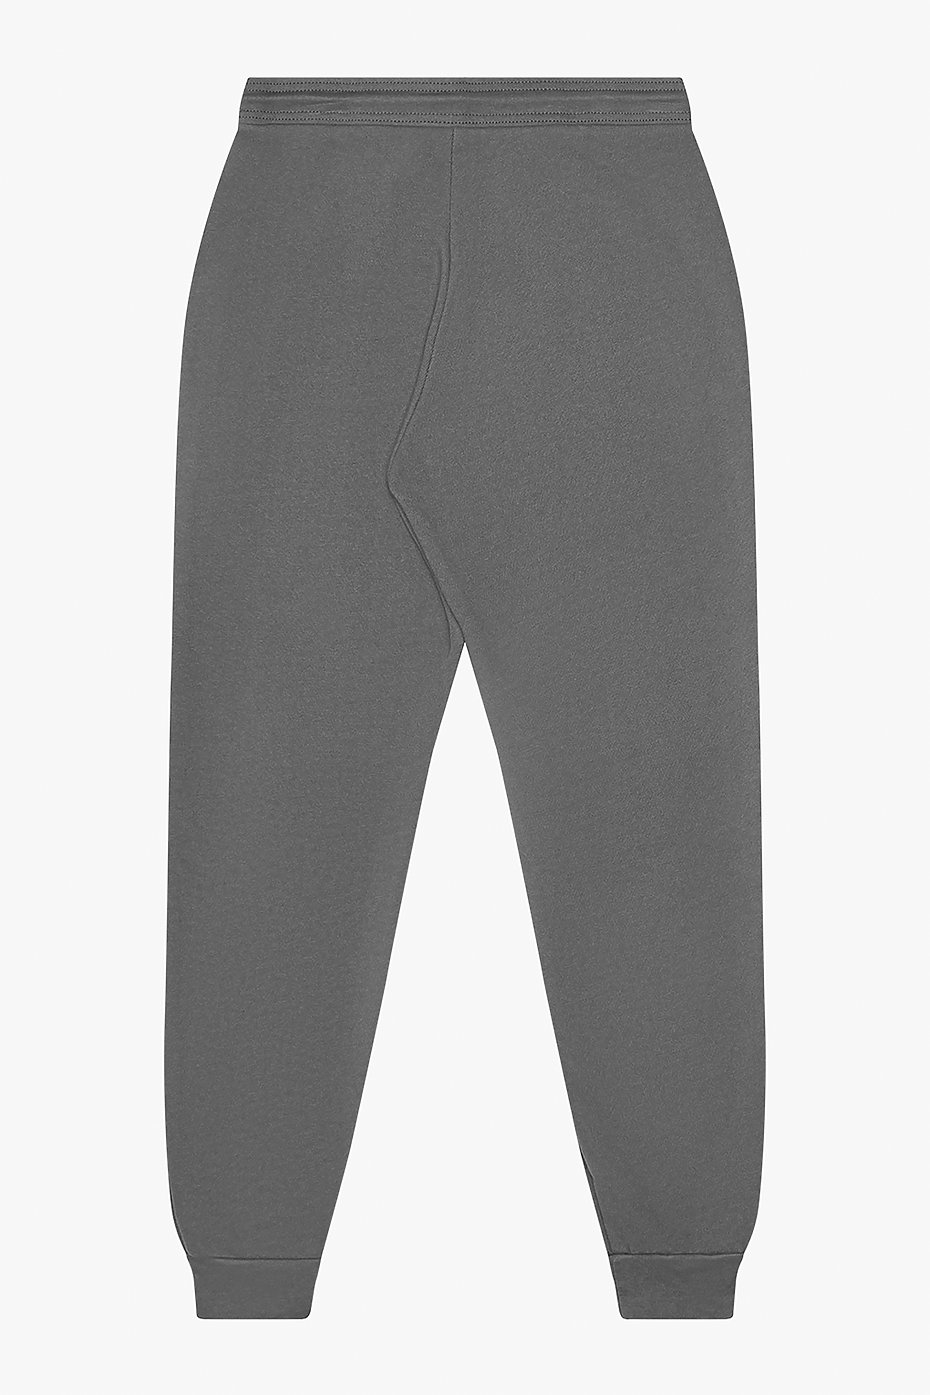 Custom Joggers, Mens Sweatpants, Unisex Wholesale Clothing, Wholesale  Workout Clothes